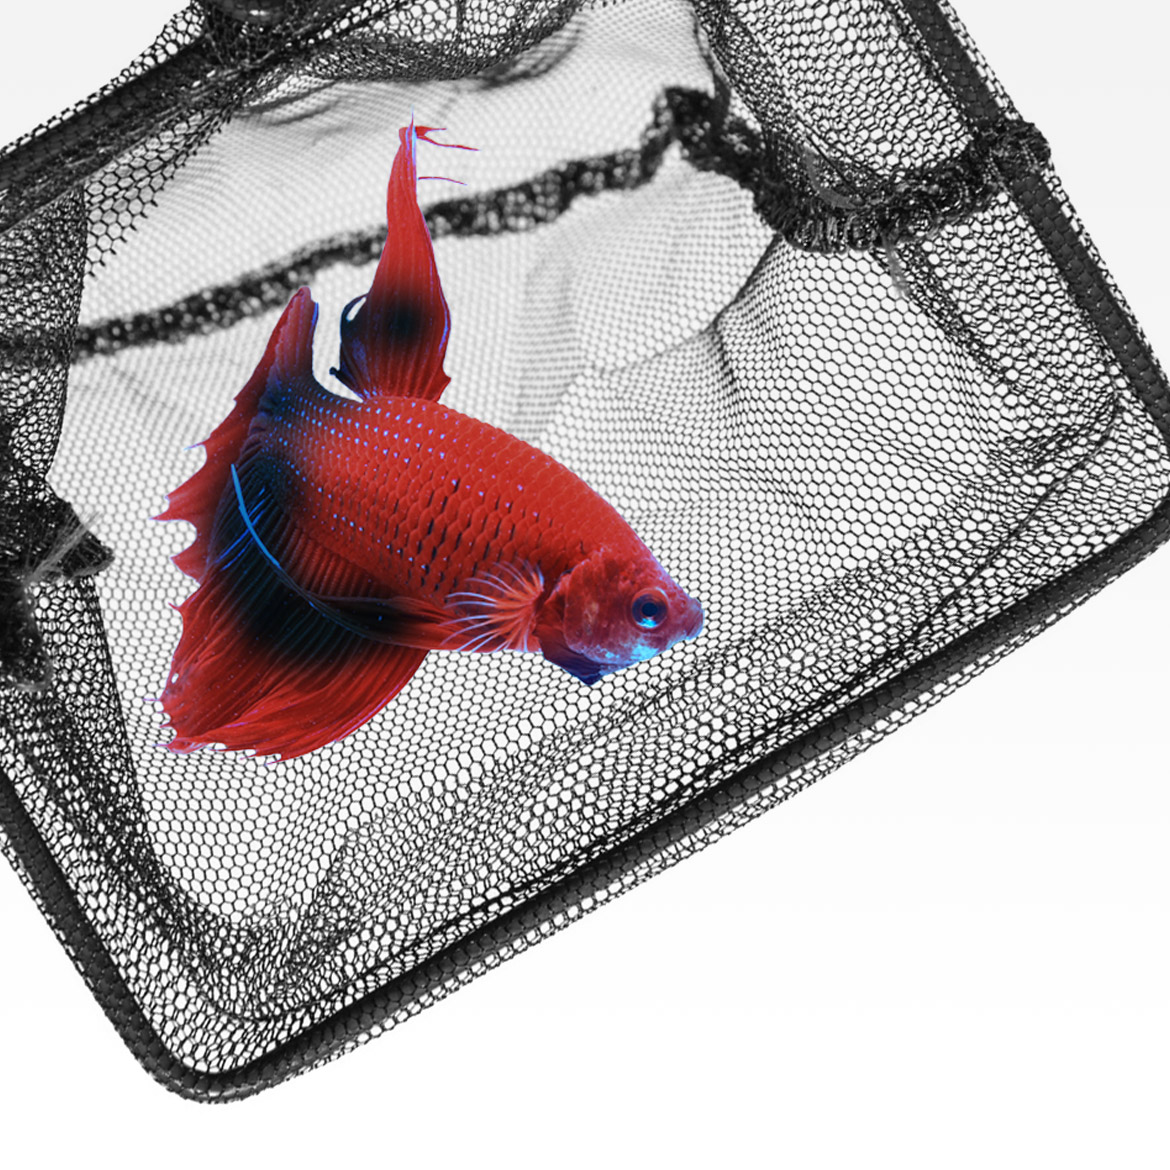 sera fish nets - fine